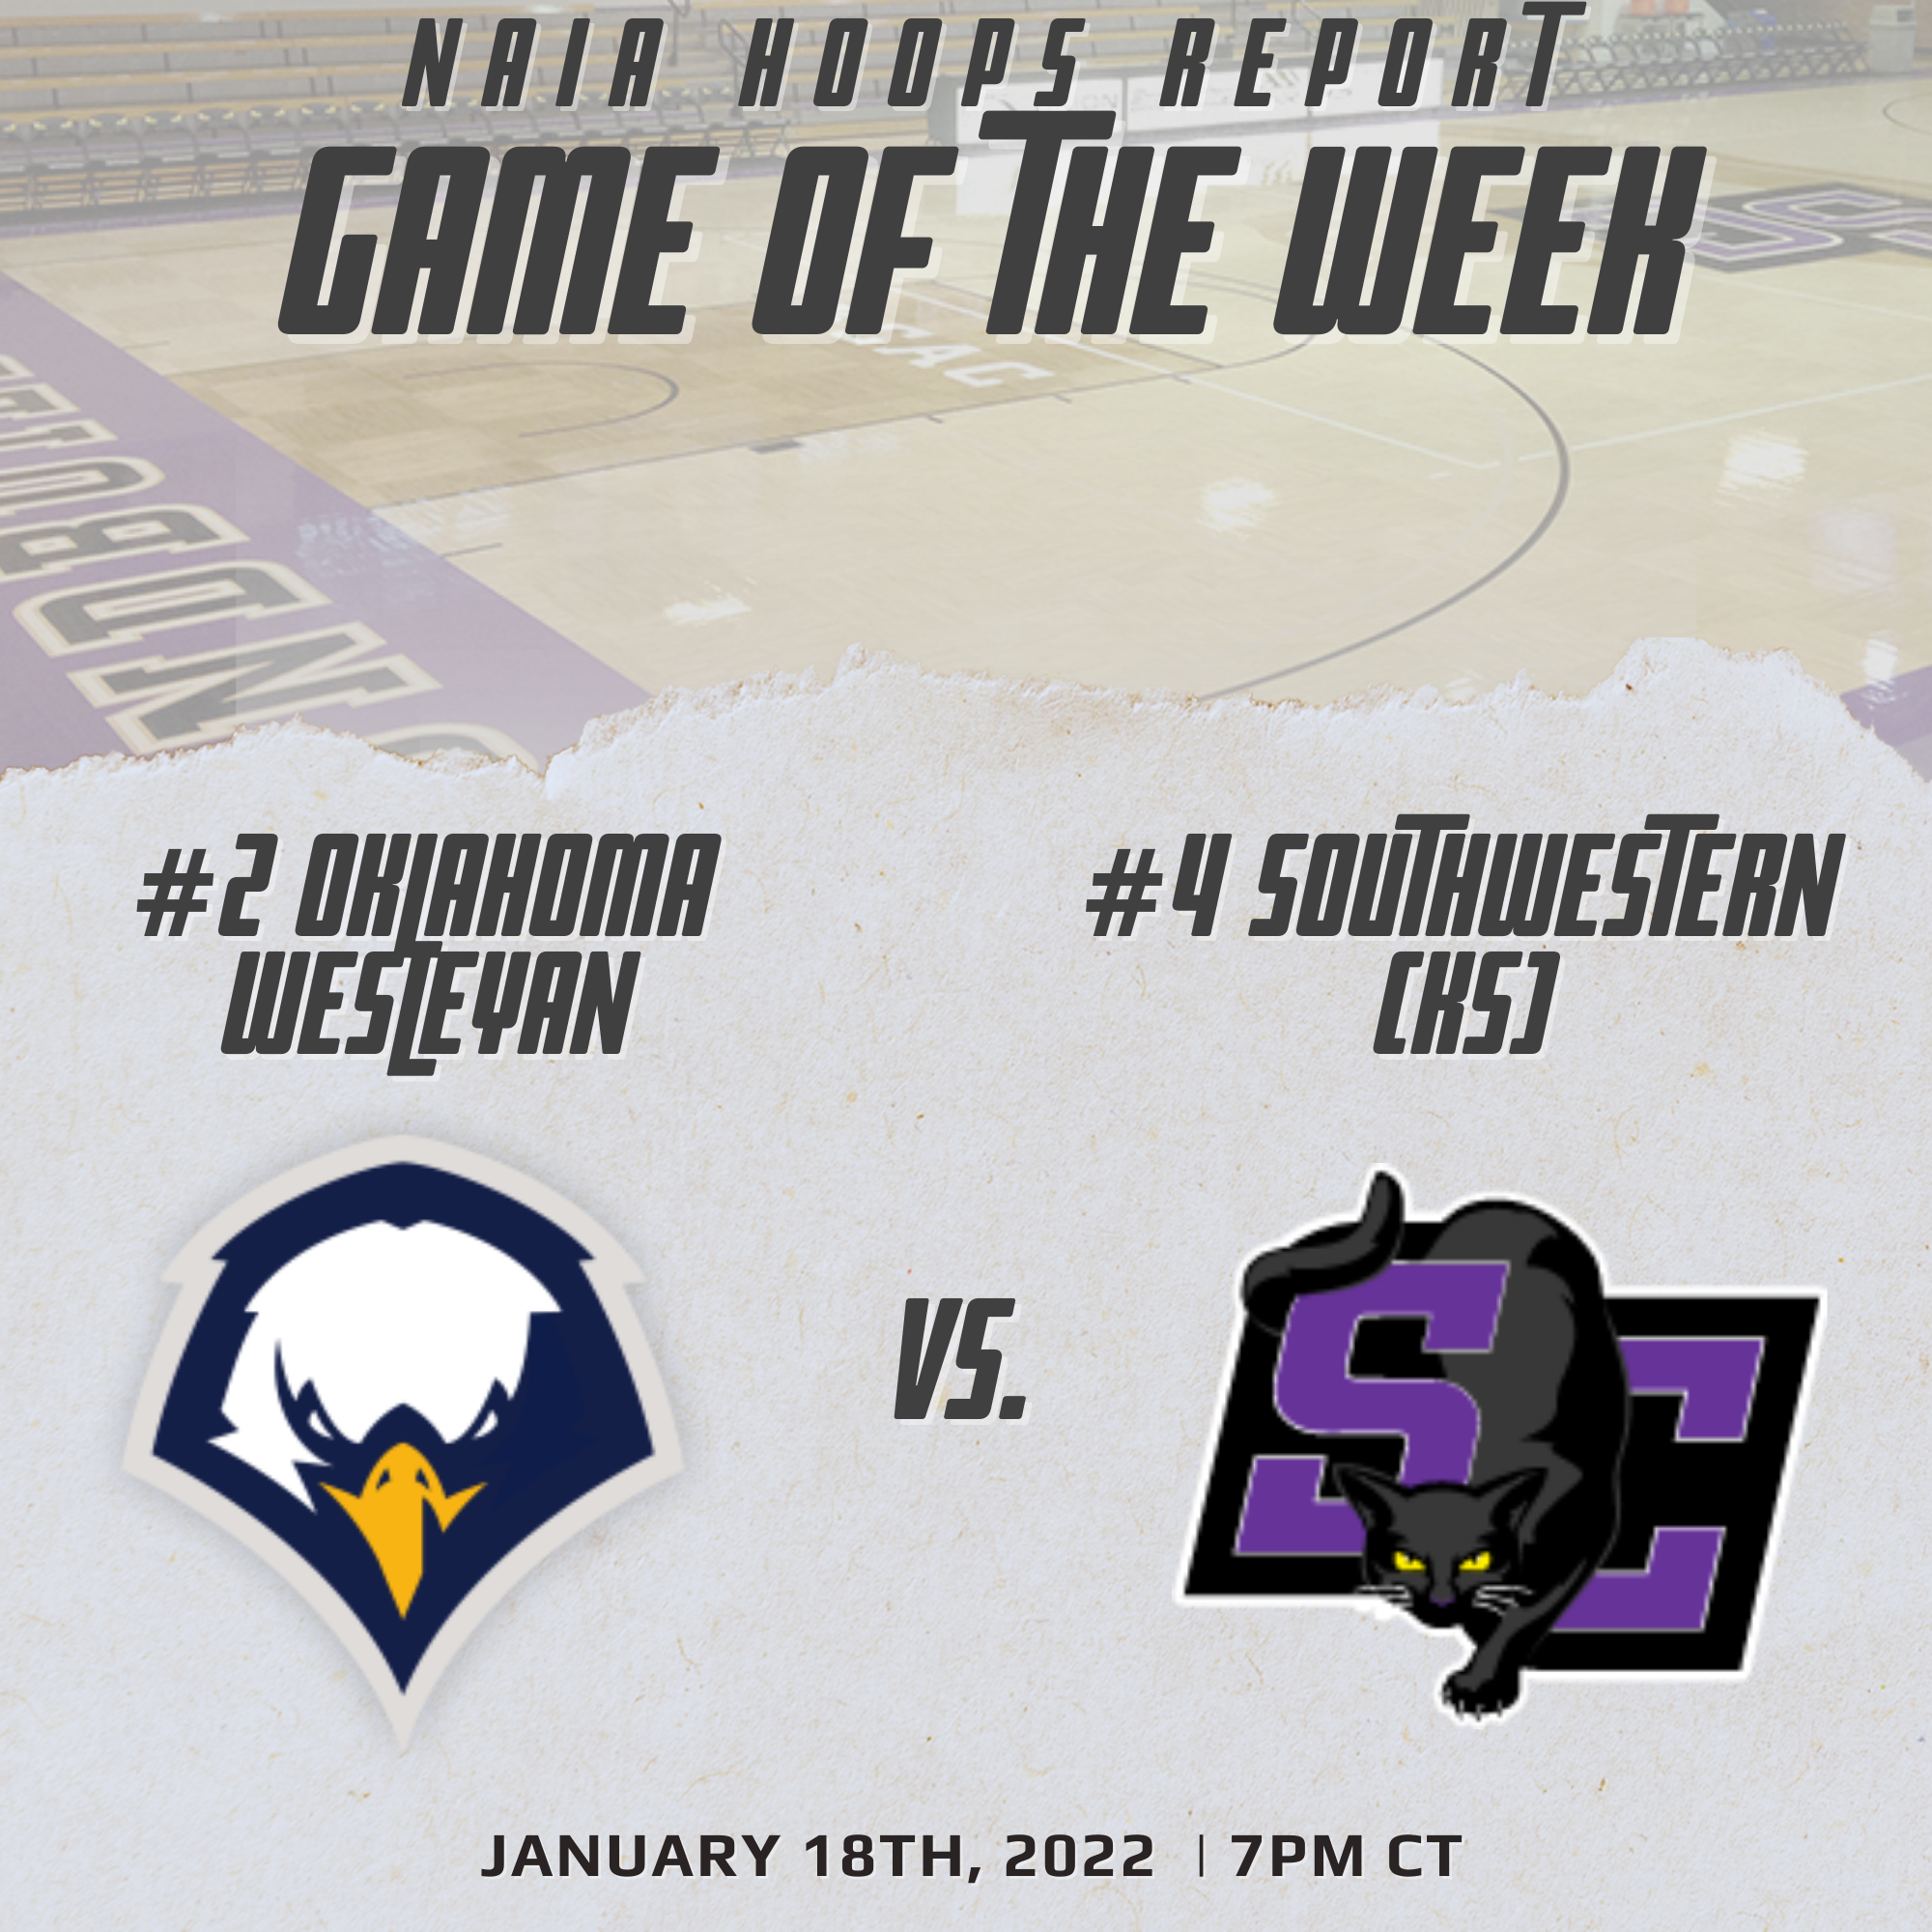 NAIA Hoops Report Game of the Week: No. 2 Oklahoma Wesleyan @ No. 4 Southwestern (KS)